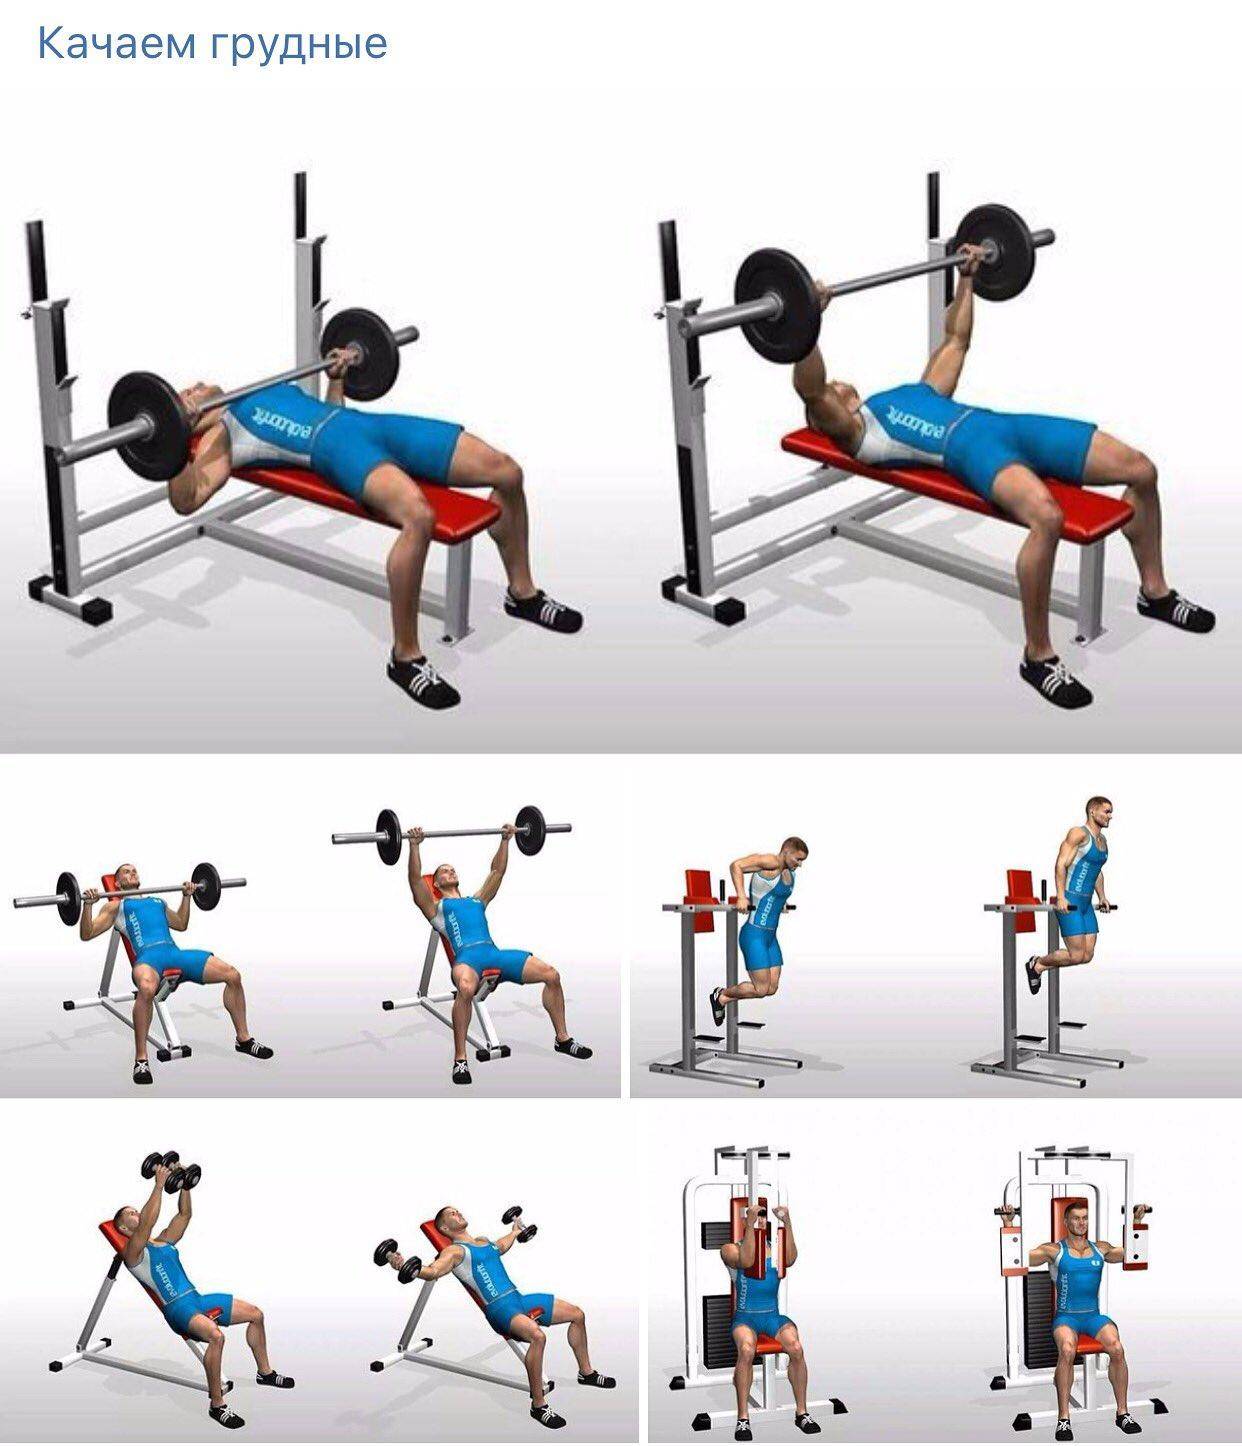 Упражнения на грудные мышцы для мужчин в тренажерном зале